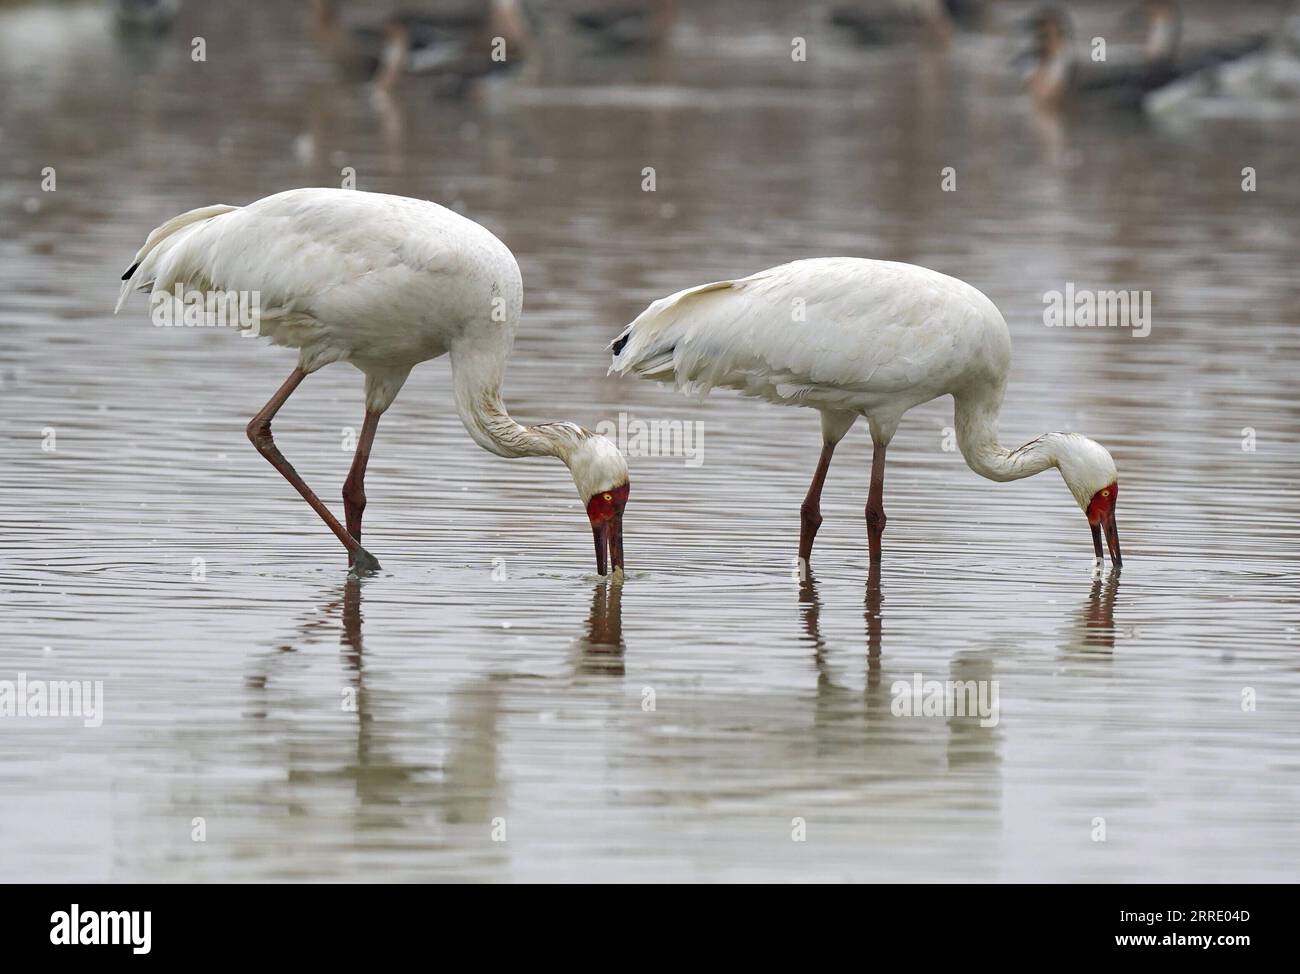 220115 -- NANCHANG, 15. Januar 2022 -- Weiße Kraniche fressen im Nanchang Five Stars Siberian Cranes Sanctuary am Poyang Lake in Nanchang, Ostchinesische Provinz Jiangxi, 12. Januar 2022. Der Poyang Lake, der größte Süßwassersee des Landes, ist ein wichtiger Überwinterungsort für Zugvögel. Um die Futtervorräte für die Vögel zu erhöhen, erließ die lokale Regierung des Yugan County 2021 eine Entschädigungspolitik für Landwirte und reservierte Reis für Zugvögel. Im fünf-Sterne-Sibirischen Kranichheiligtum Nanchang am Poyang-See wurden Kraniche auf einem Lotussee zum Essen angezogen. Der Teich, initi Stockfoto